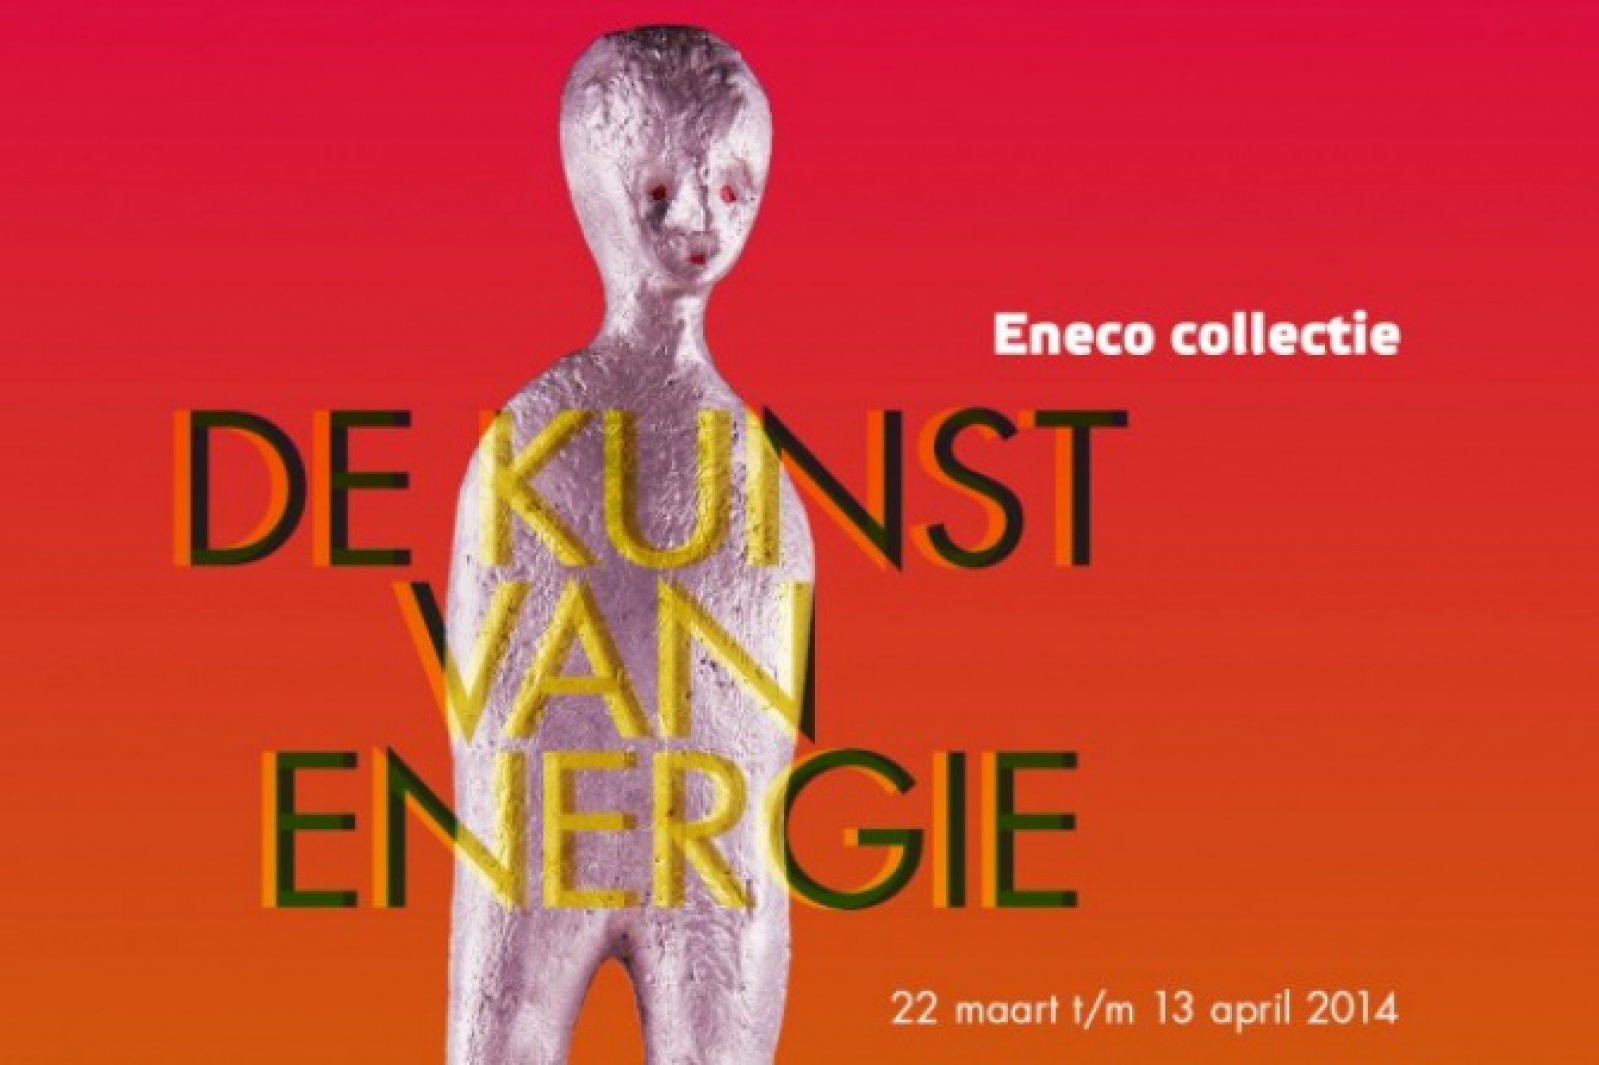 Collectietentoonstelling Eneco 'De Kunst van Energie' in Pulchri-studio